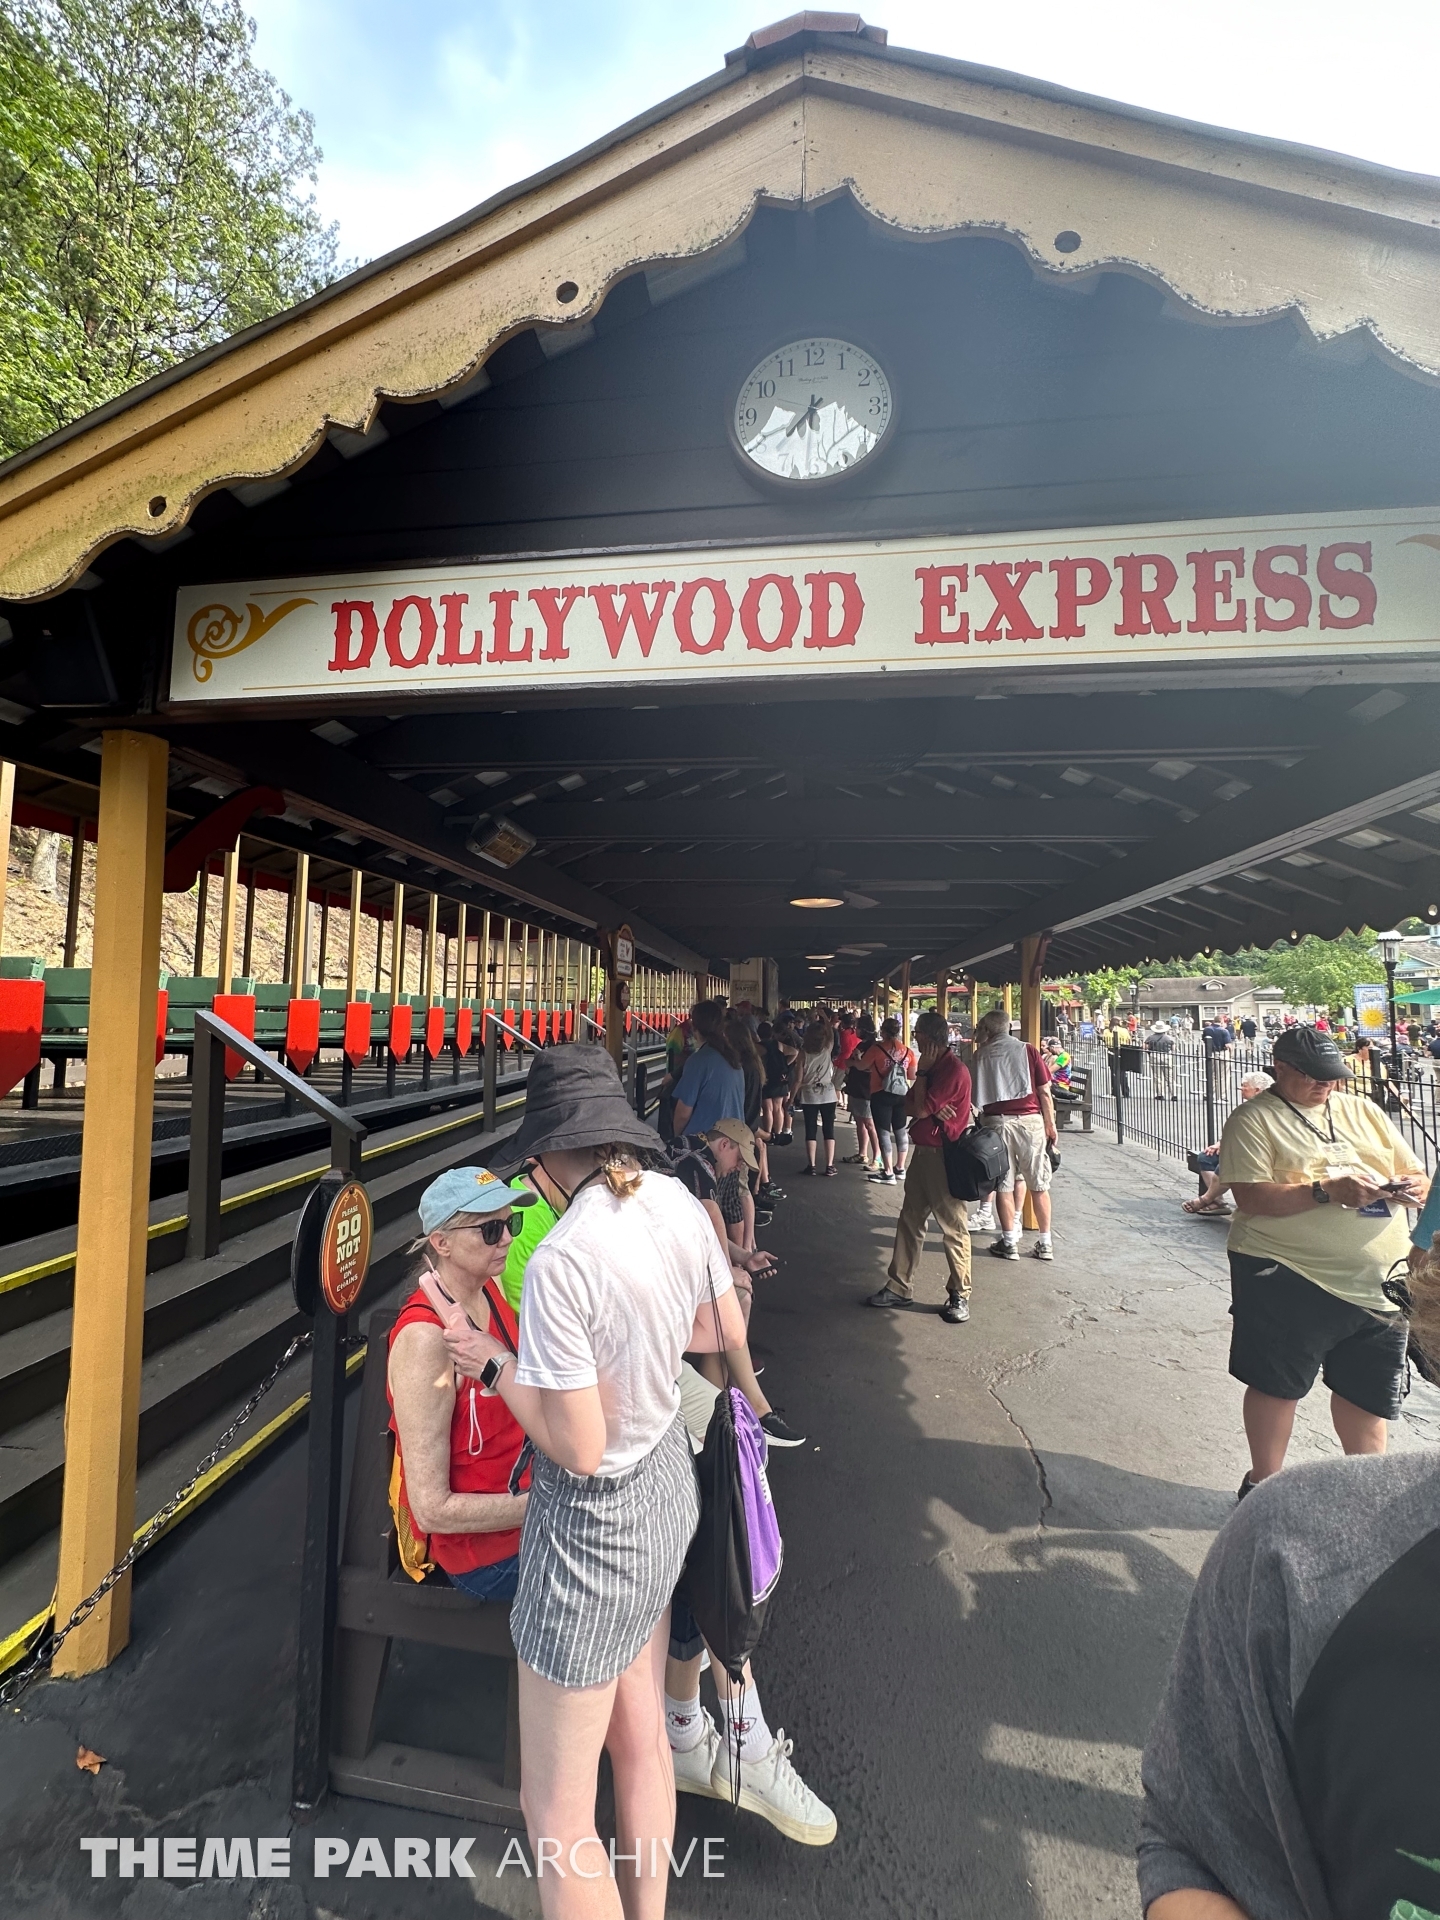 Dollywood Express at Dollywood